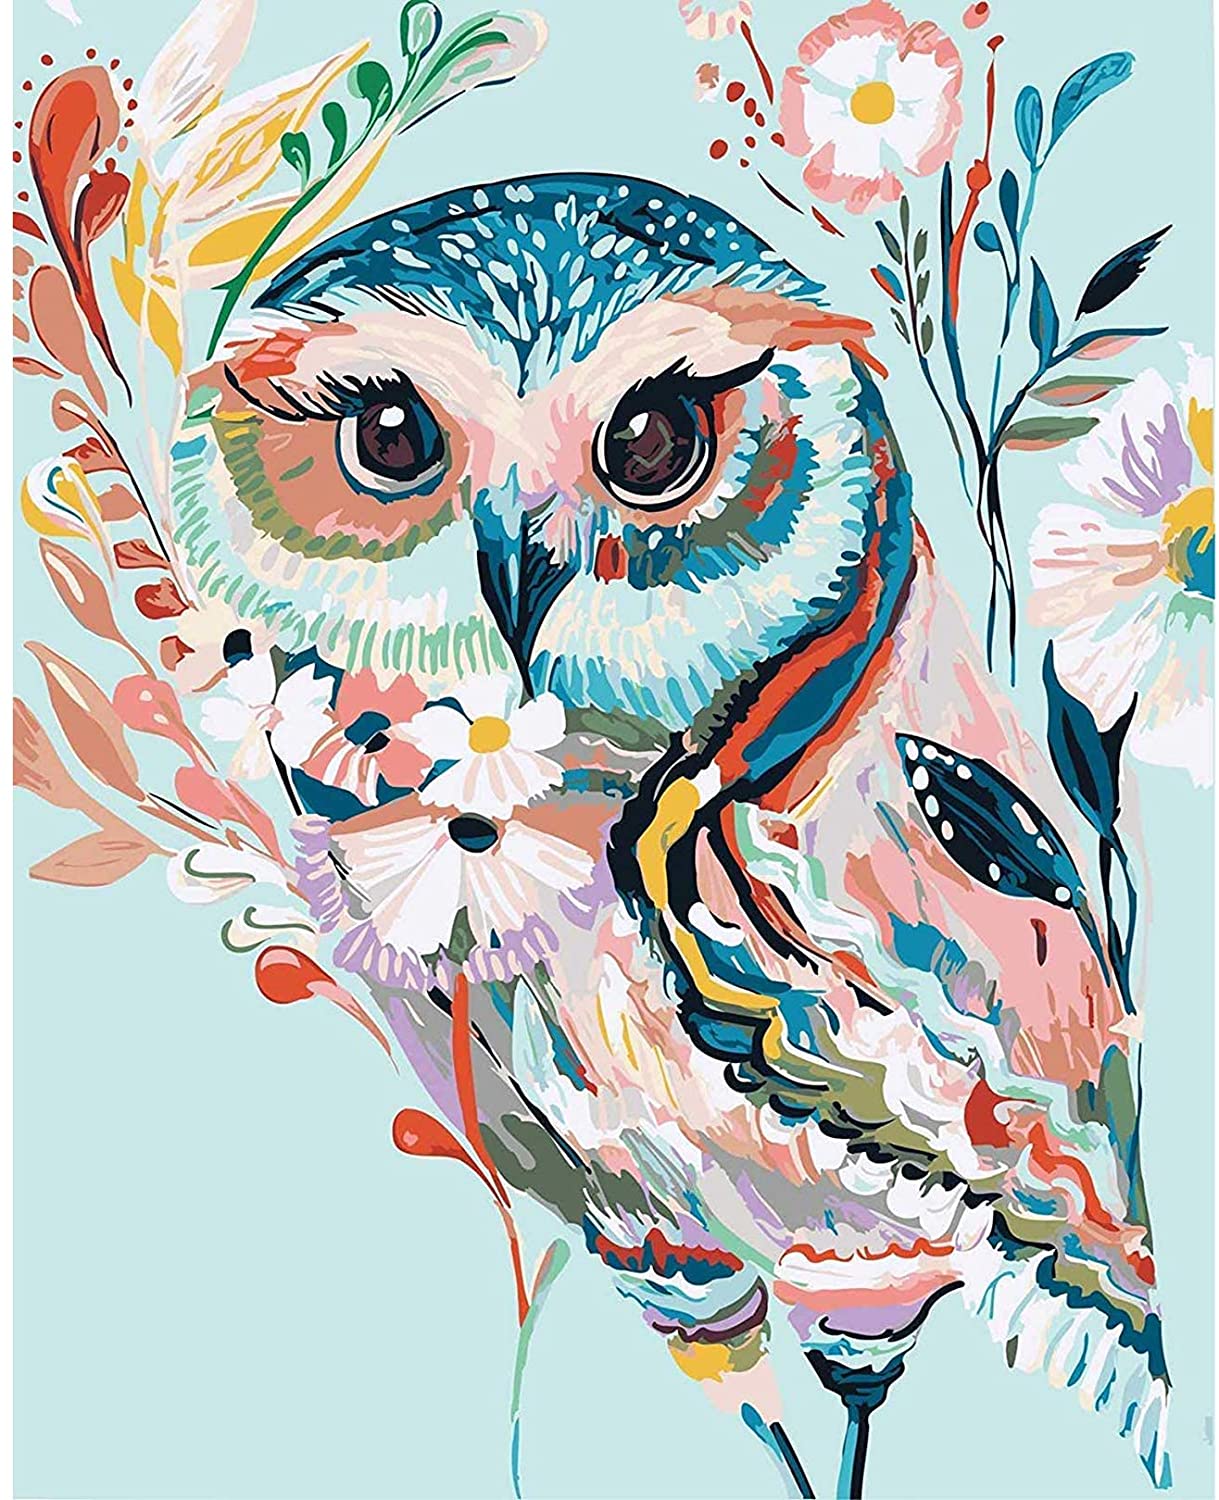 Diamond Painting Full Square Owl  Diamond Painting Owls Christmas -  Diamond Painting - Aliexpress